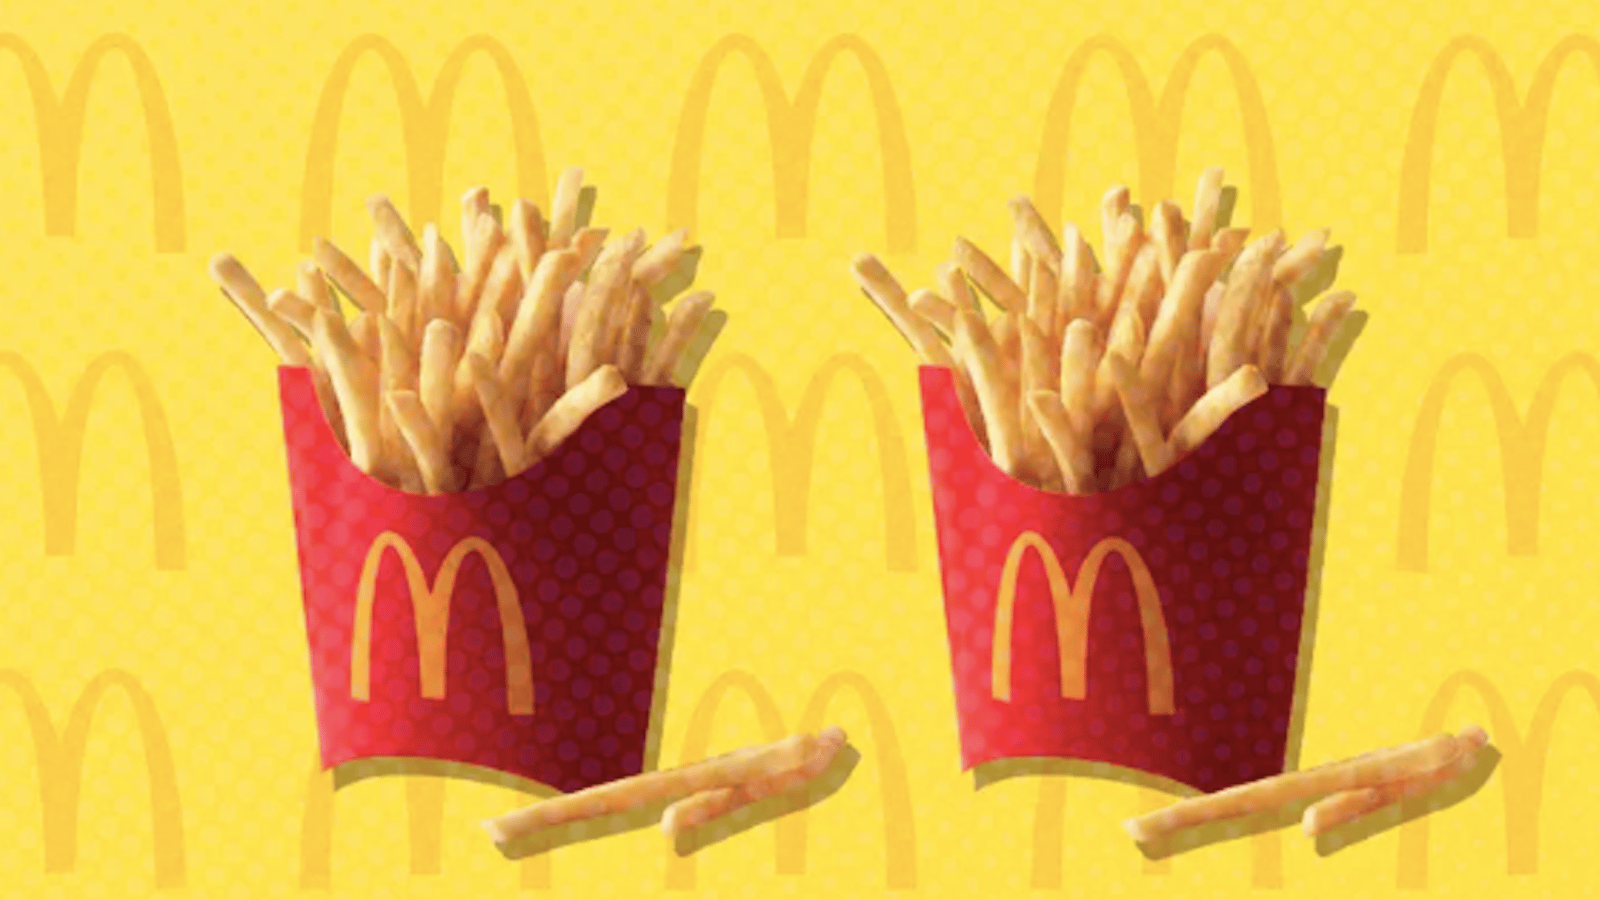 Les frites de McDonald's ne sont pas que des pommes de terre. Voici ce qu'elles contiennent.